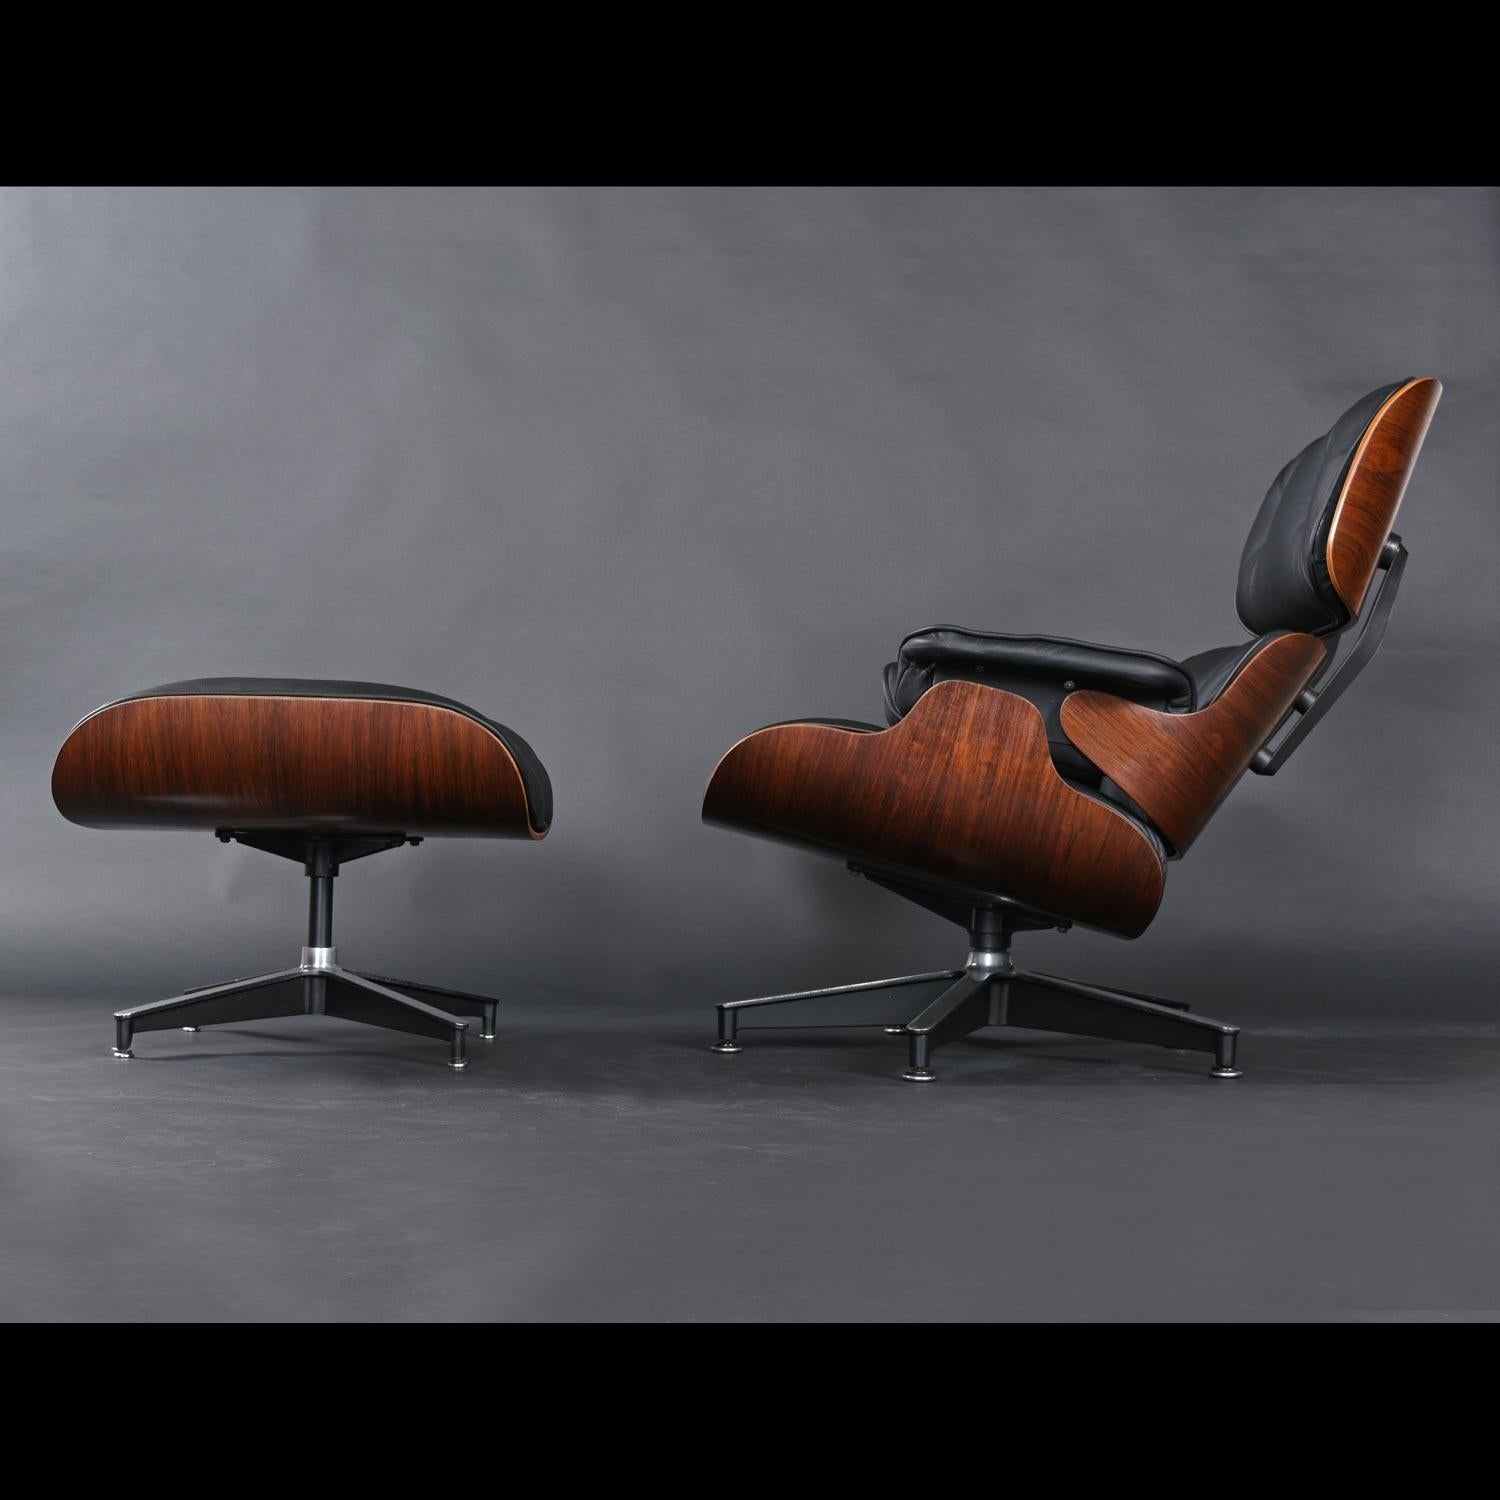 Cette chaise Eames ancienne (coussin rempli de duvet) est disponible aujourd'hui dans de nombreuses finitions de bois. Toutefois, le bois de rose n'est plus proposé sur les nouvelles chaises produites par Herman Miller. Ce bois exotique de luxe est